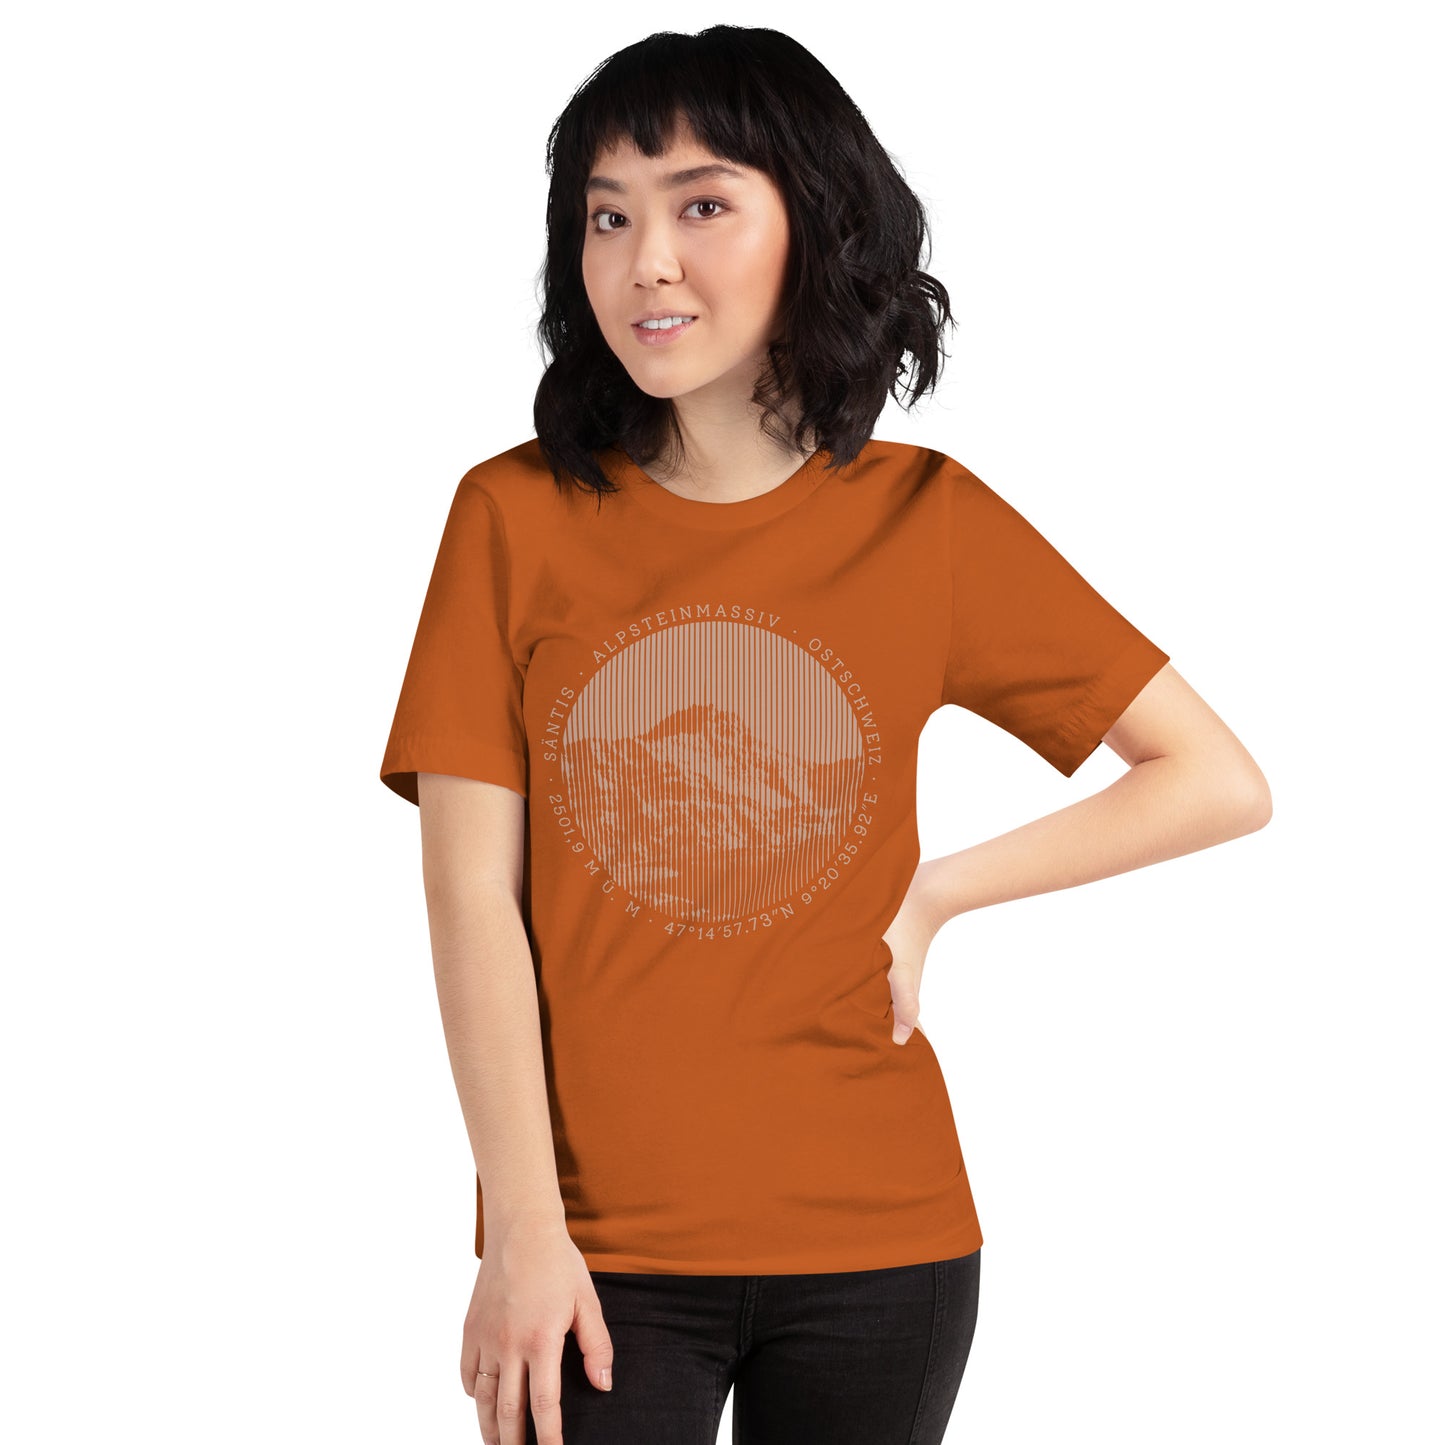 Diese Bergbegeisterte trägt ein oranges Damen T-Shirt von Vallada mit einem Aufdruck des Säntis-Gipfels. Dieses T-Shirt ist ein Statement für ihren Enthusiasmus für diesen Berg in den Appenzeller Alpen.